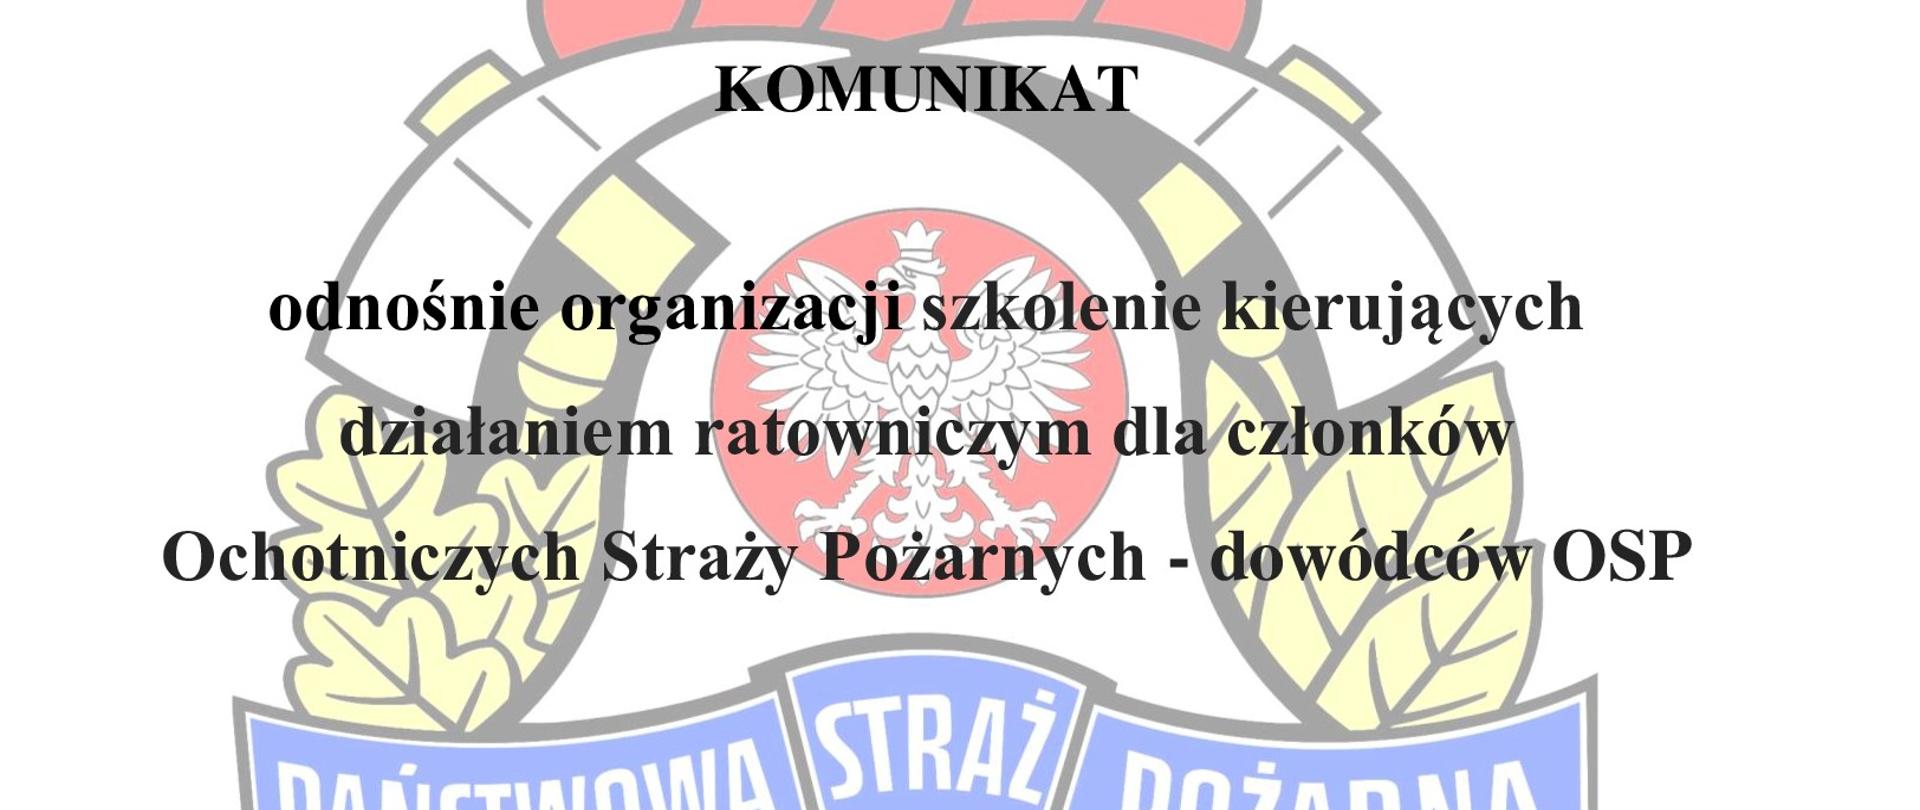 Logo PSP w tle, na pierwszym planie czarny napis "Komunikat
odnośnie organizacji szkolenie kierujących działaniem ratowniczym dla członków Ochotniczych Straży Pożarnych - dowódców osp"
